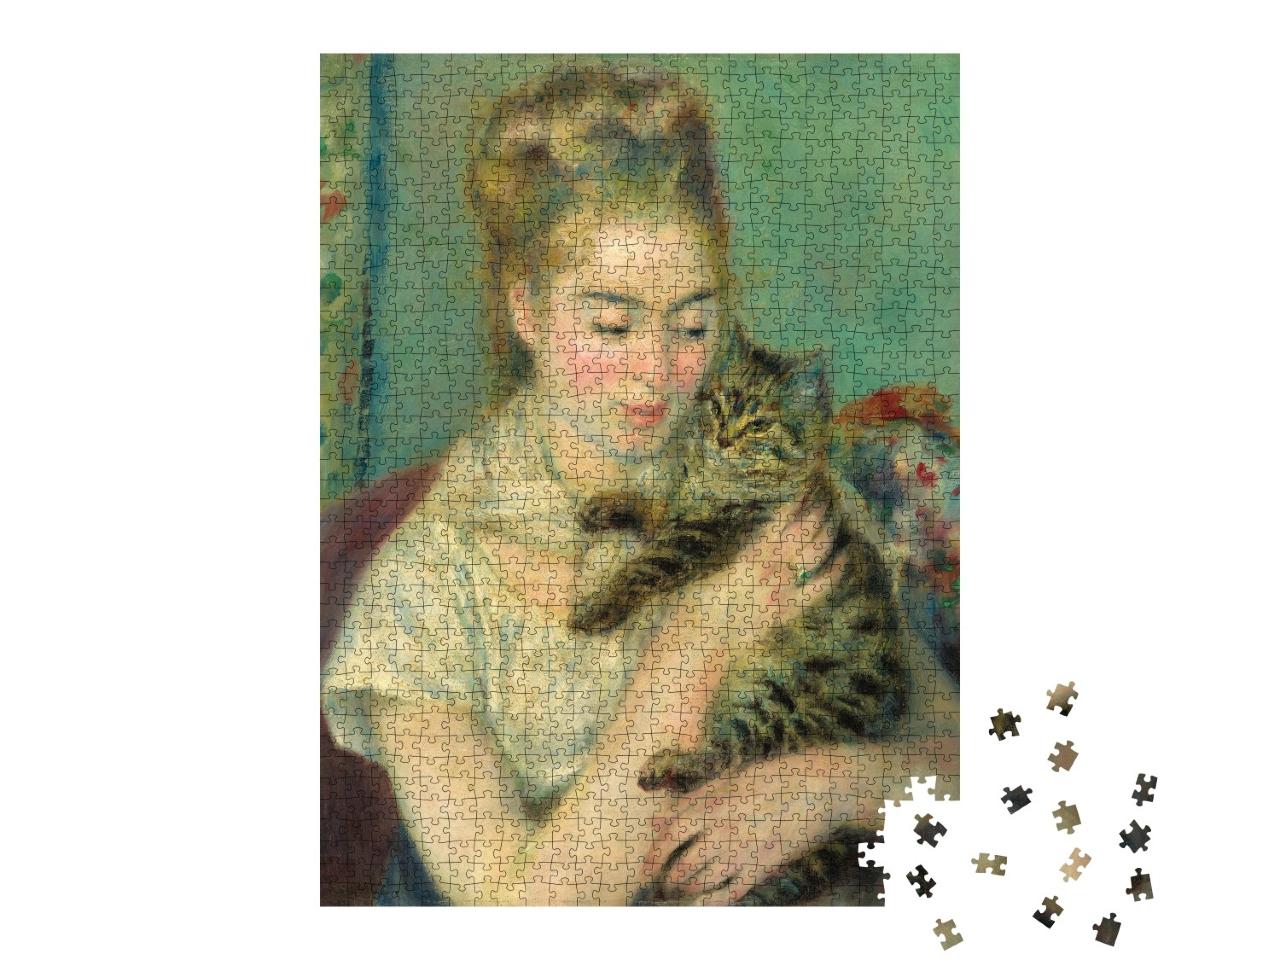 Puzzle de 1000 pièces « Auguste Renoir - Femme au chat »